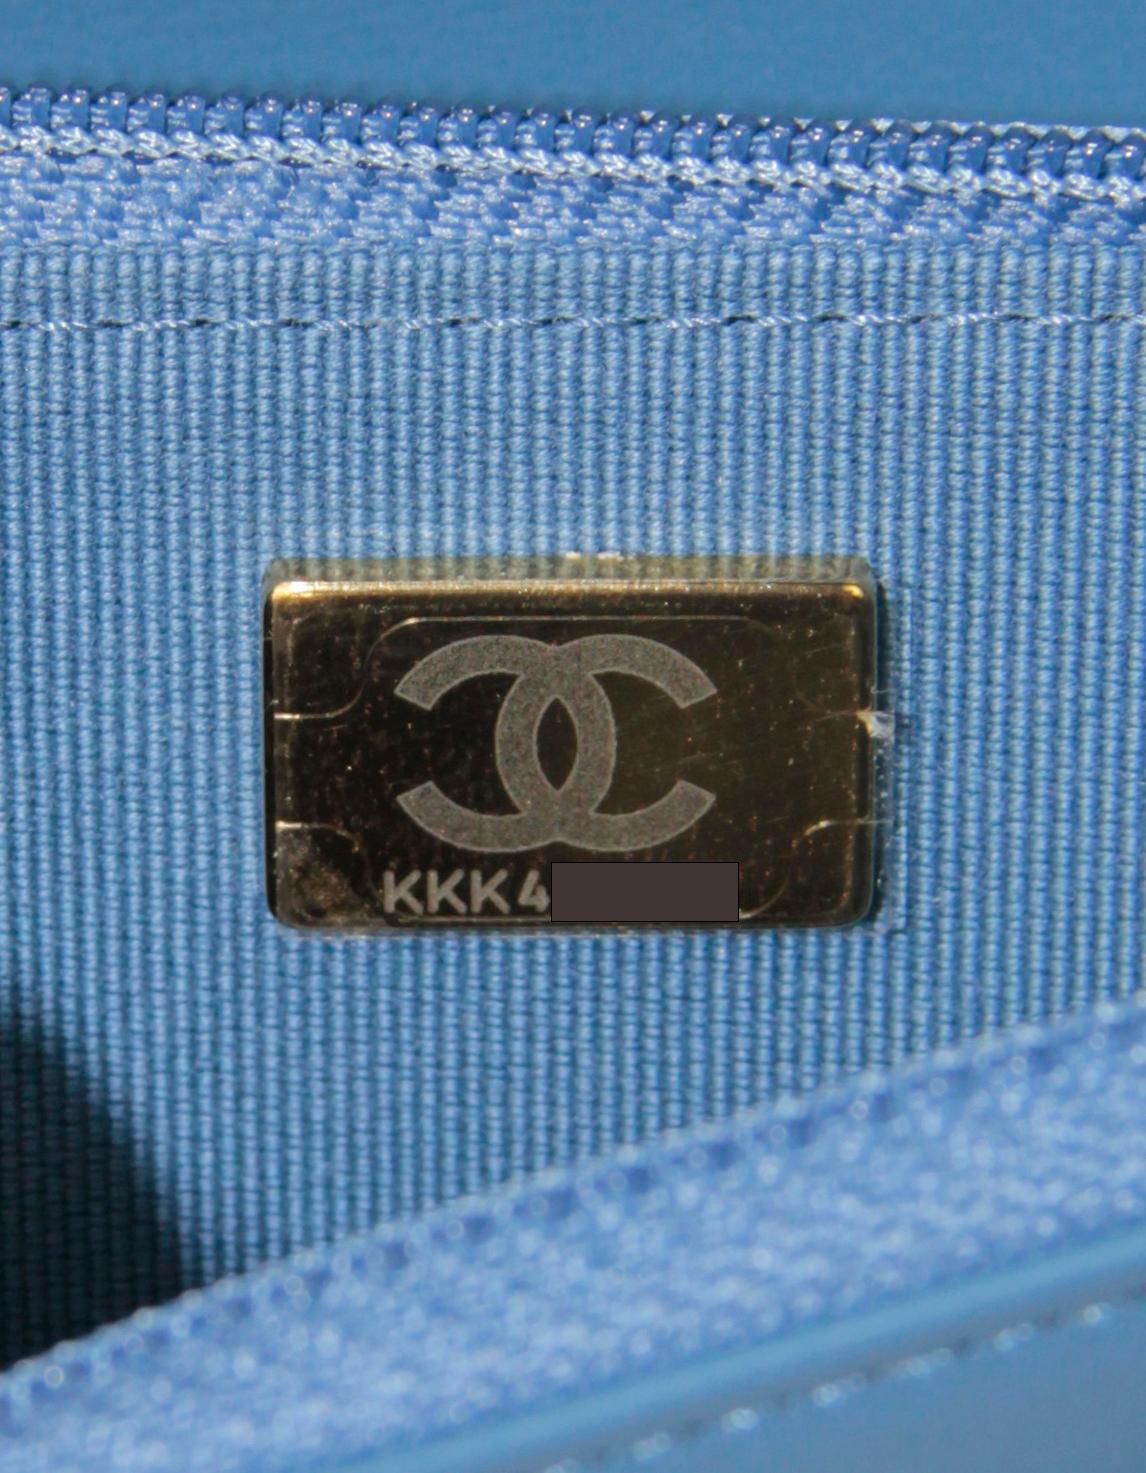 Chanel 2022 Denim Quilted 19 Wallet On Chain WOC Crossbody Bag.  Ce sac est muni d'une puce électronique et n'a pas été fabriqué avec un hologramme ou une carte d'authenticité.

Fabriqué en : Italie
Année de production : 2022
Couleur :